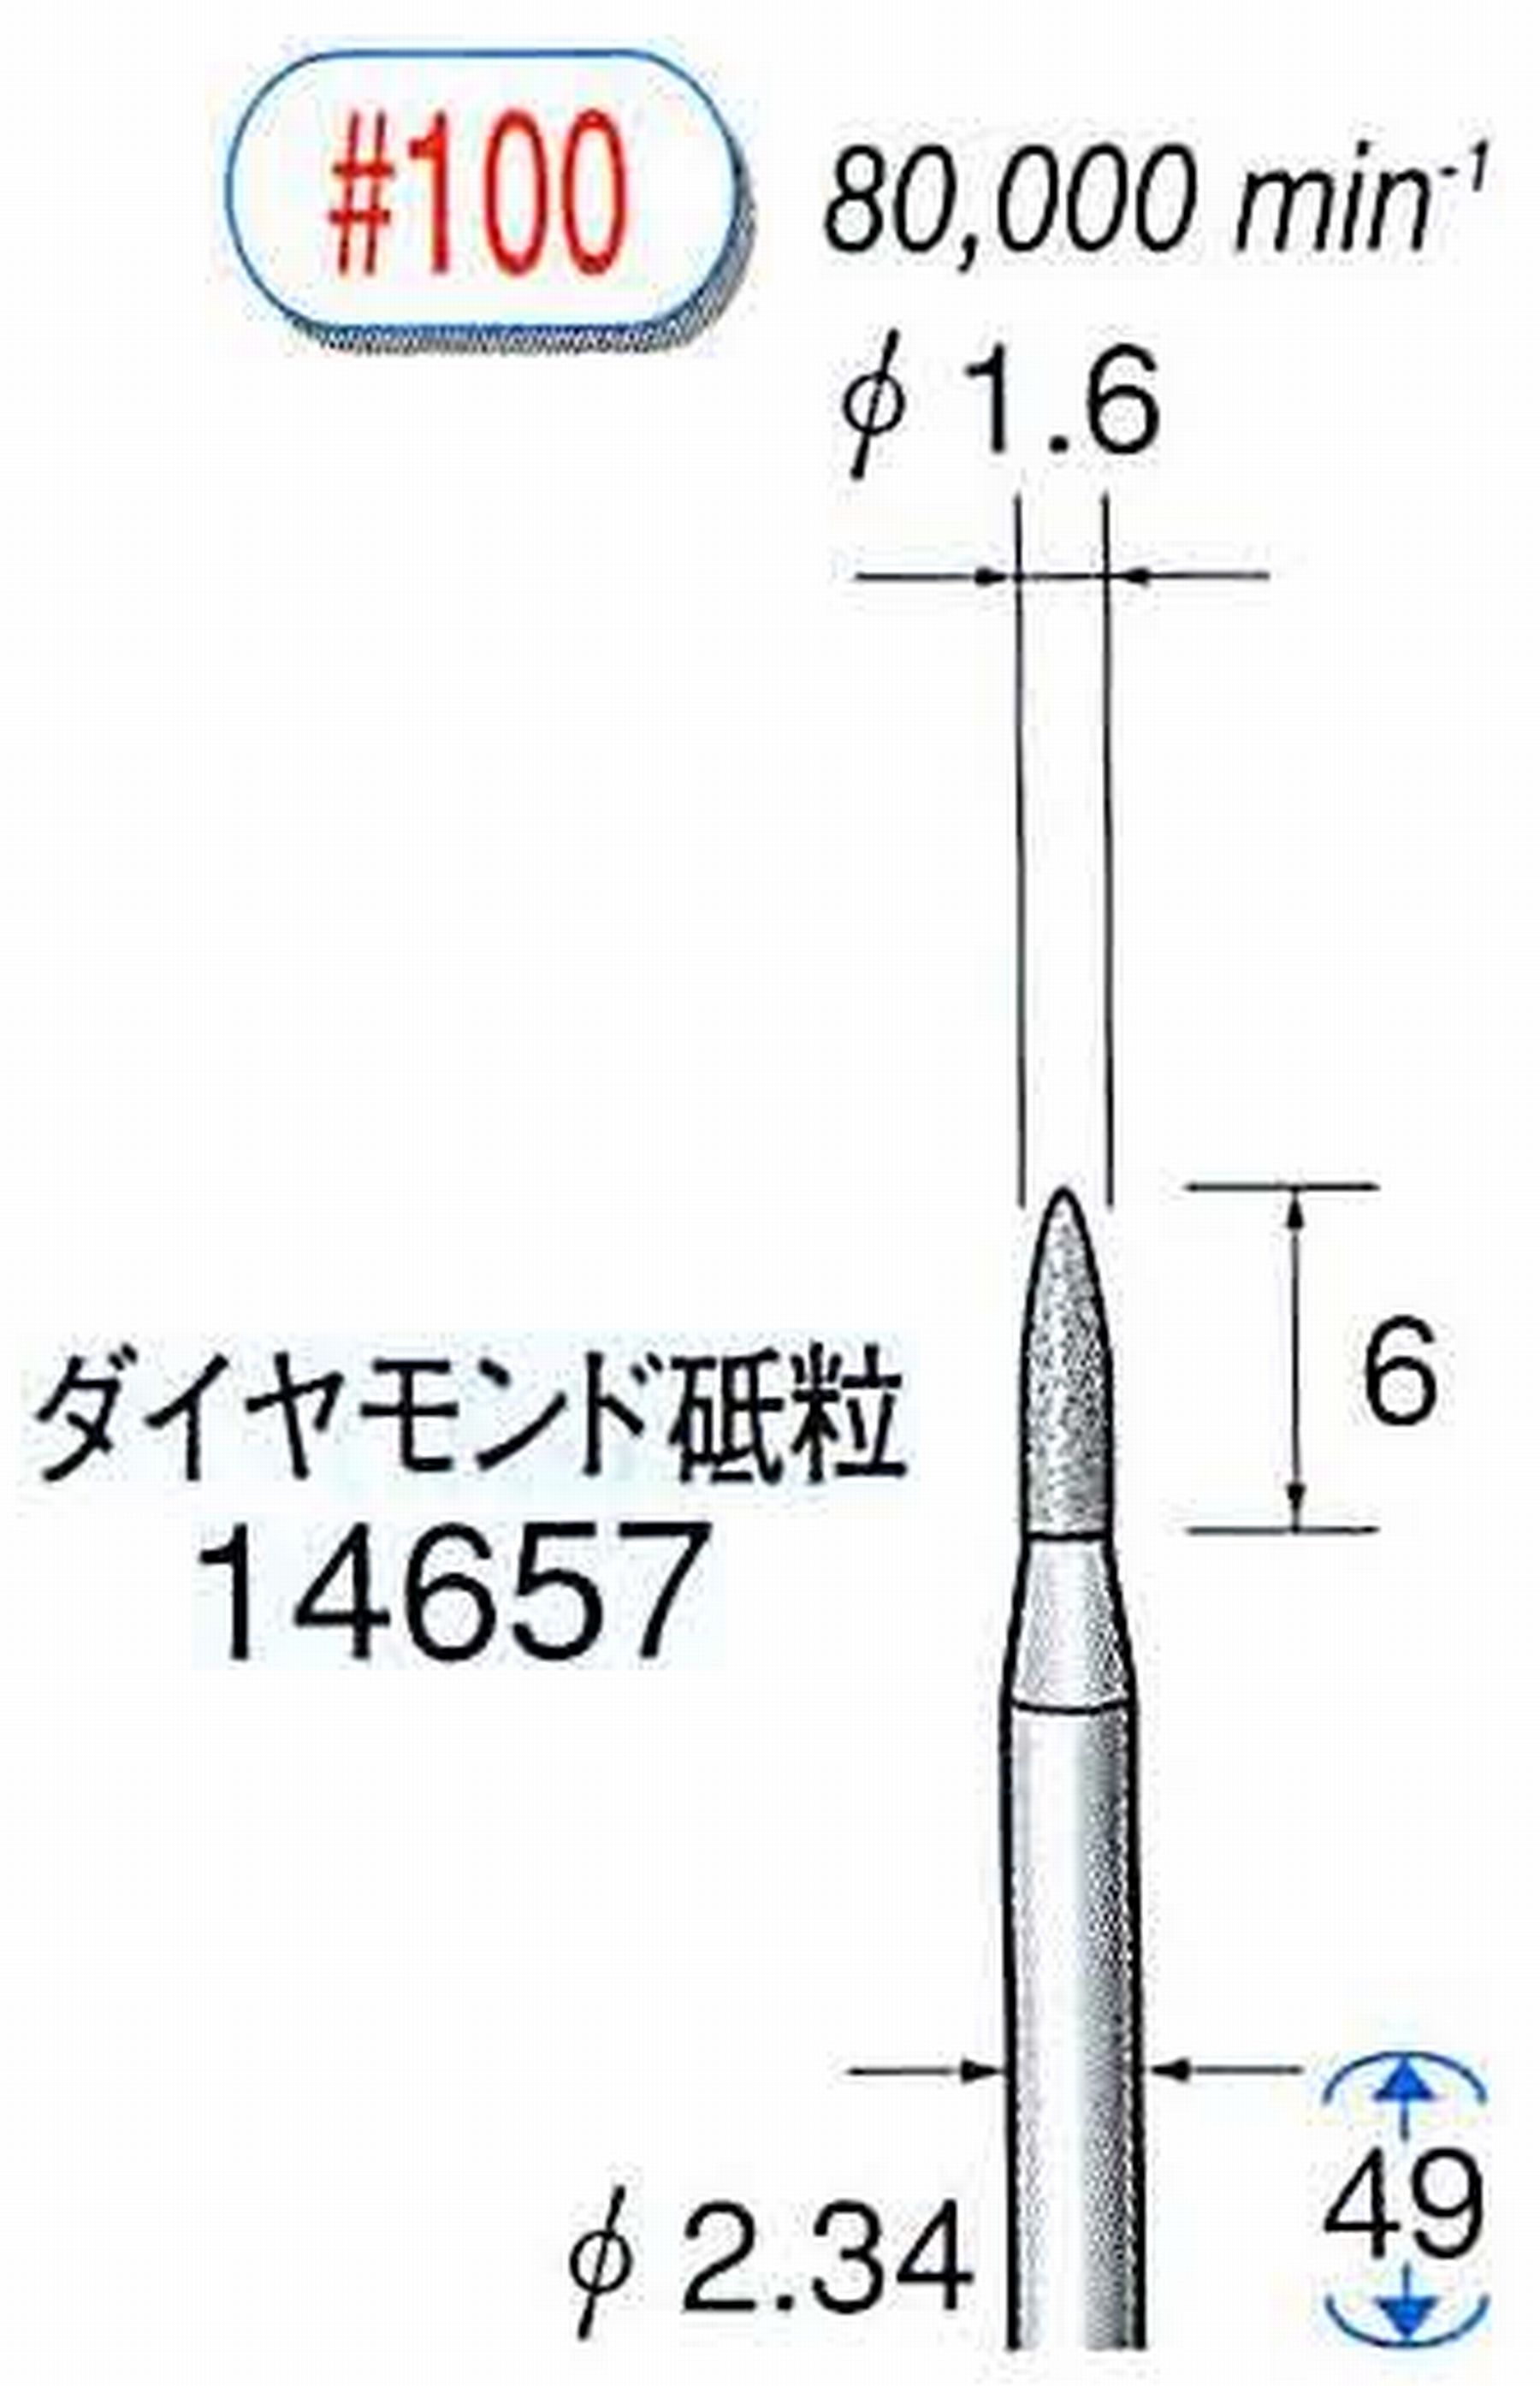 ナカニシ/NAKANISHI ダイヤモンドバー メタルボンドタイプ ダイヤモンド砥粒 軸径(シャンク)φ2.34mm 14657